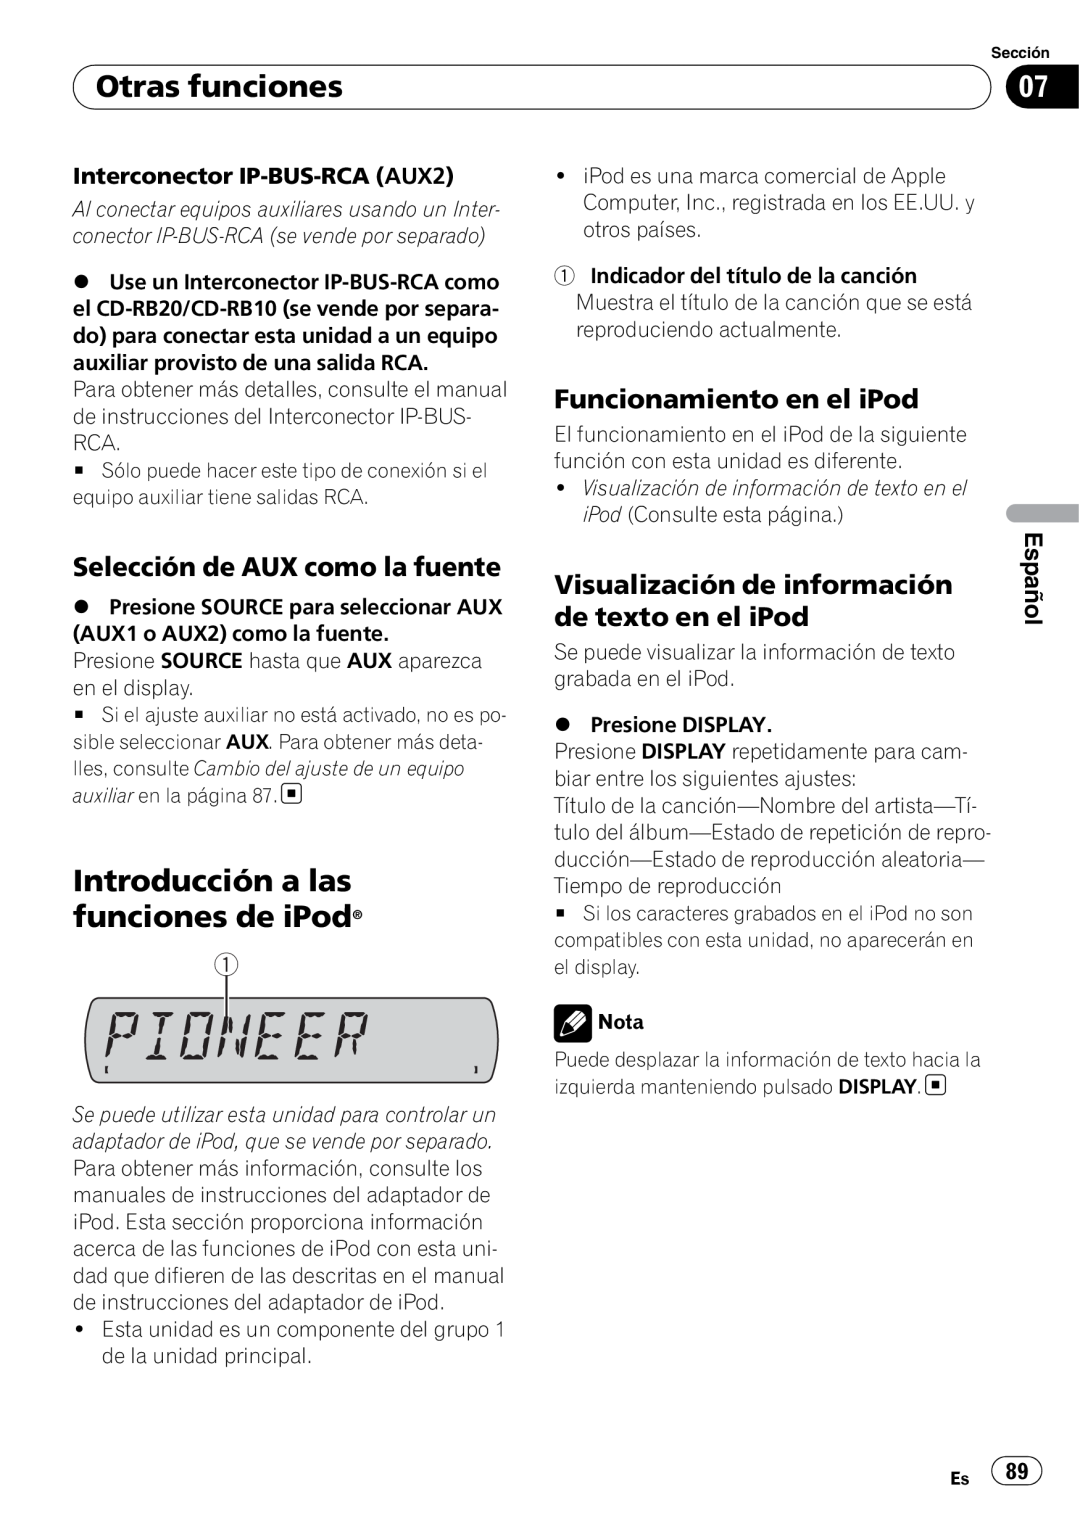 Sony DEH-P2900MP Introducción a las funciones de iPod, Funcionamiento en el iPod, Selección de AUX como la fuente, Español 